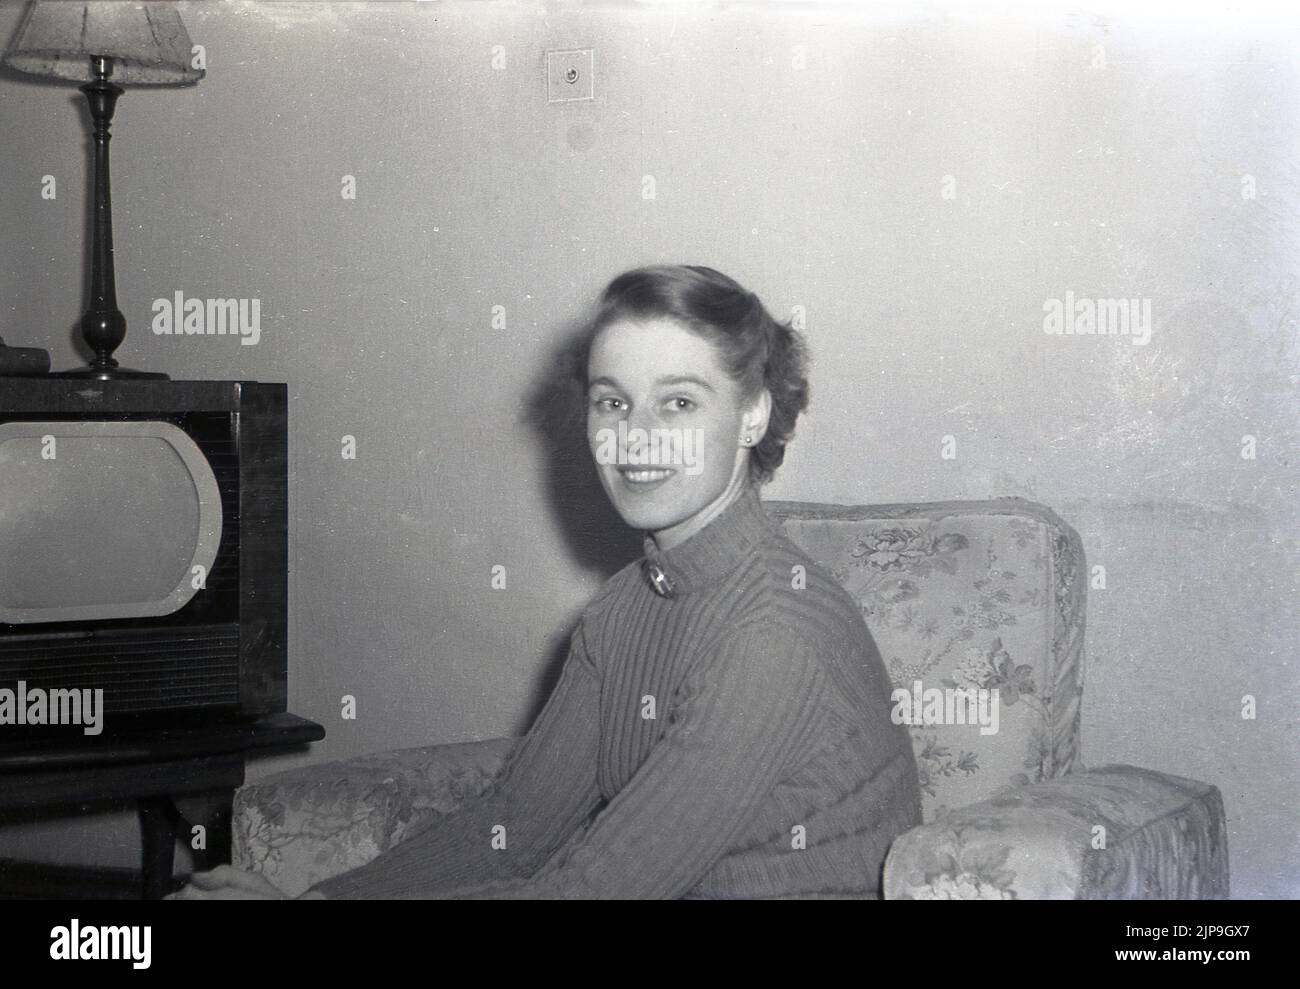 1953, historique, dame dans un chandail assis à côté d'un ensemble de télévision de l'époque, Angleterre, Royaume-Uni. Banque D'Images